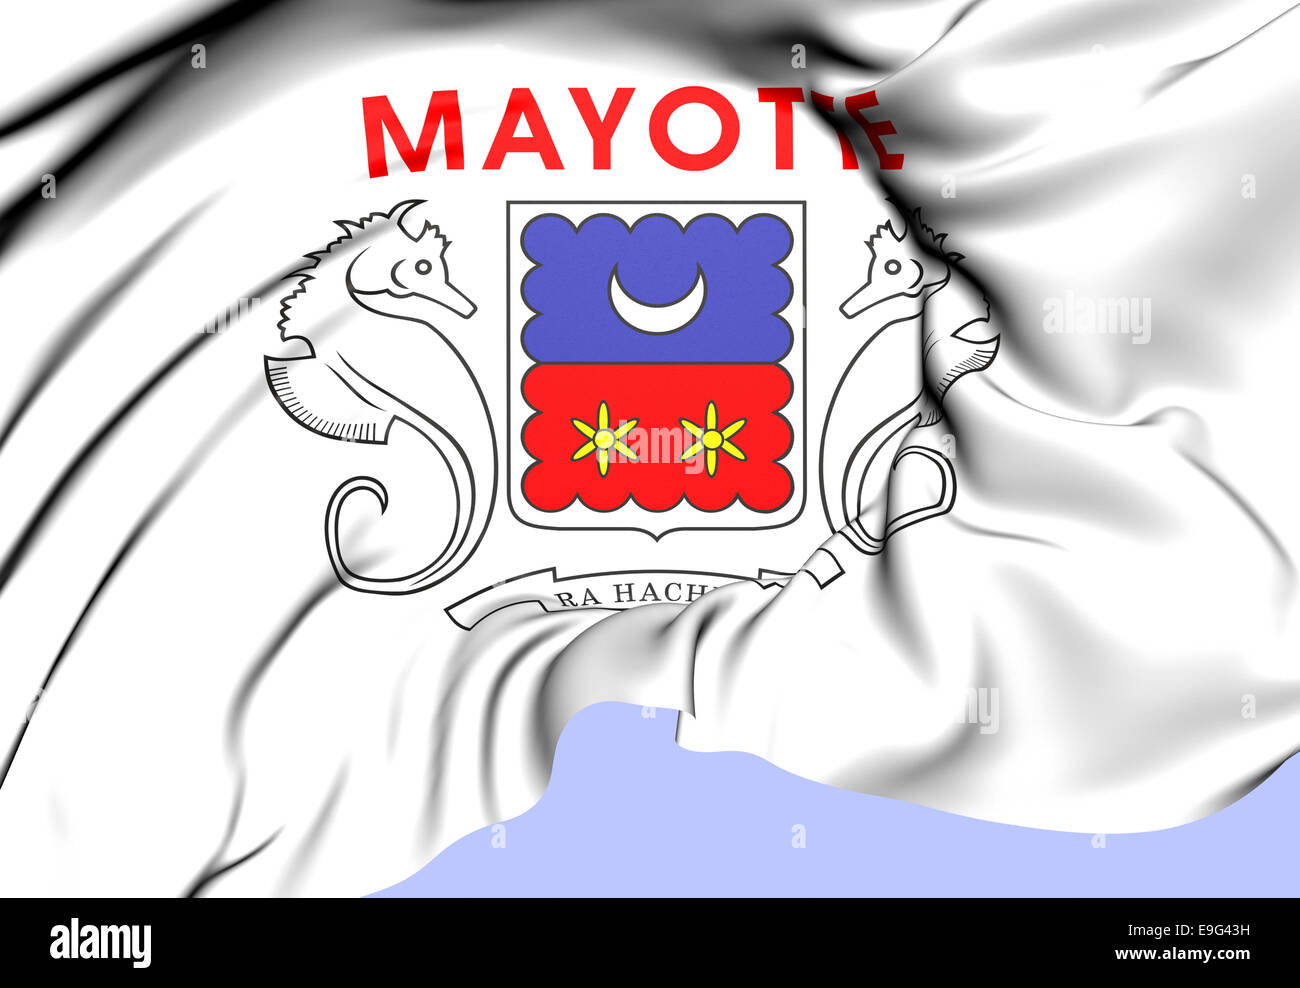 https://c8.alamy.com/comp/E9G43H/department-of-mayotte-flag-E9G43H.jpg